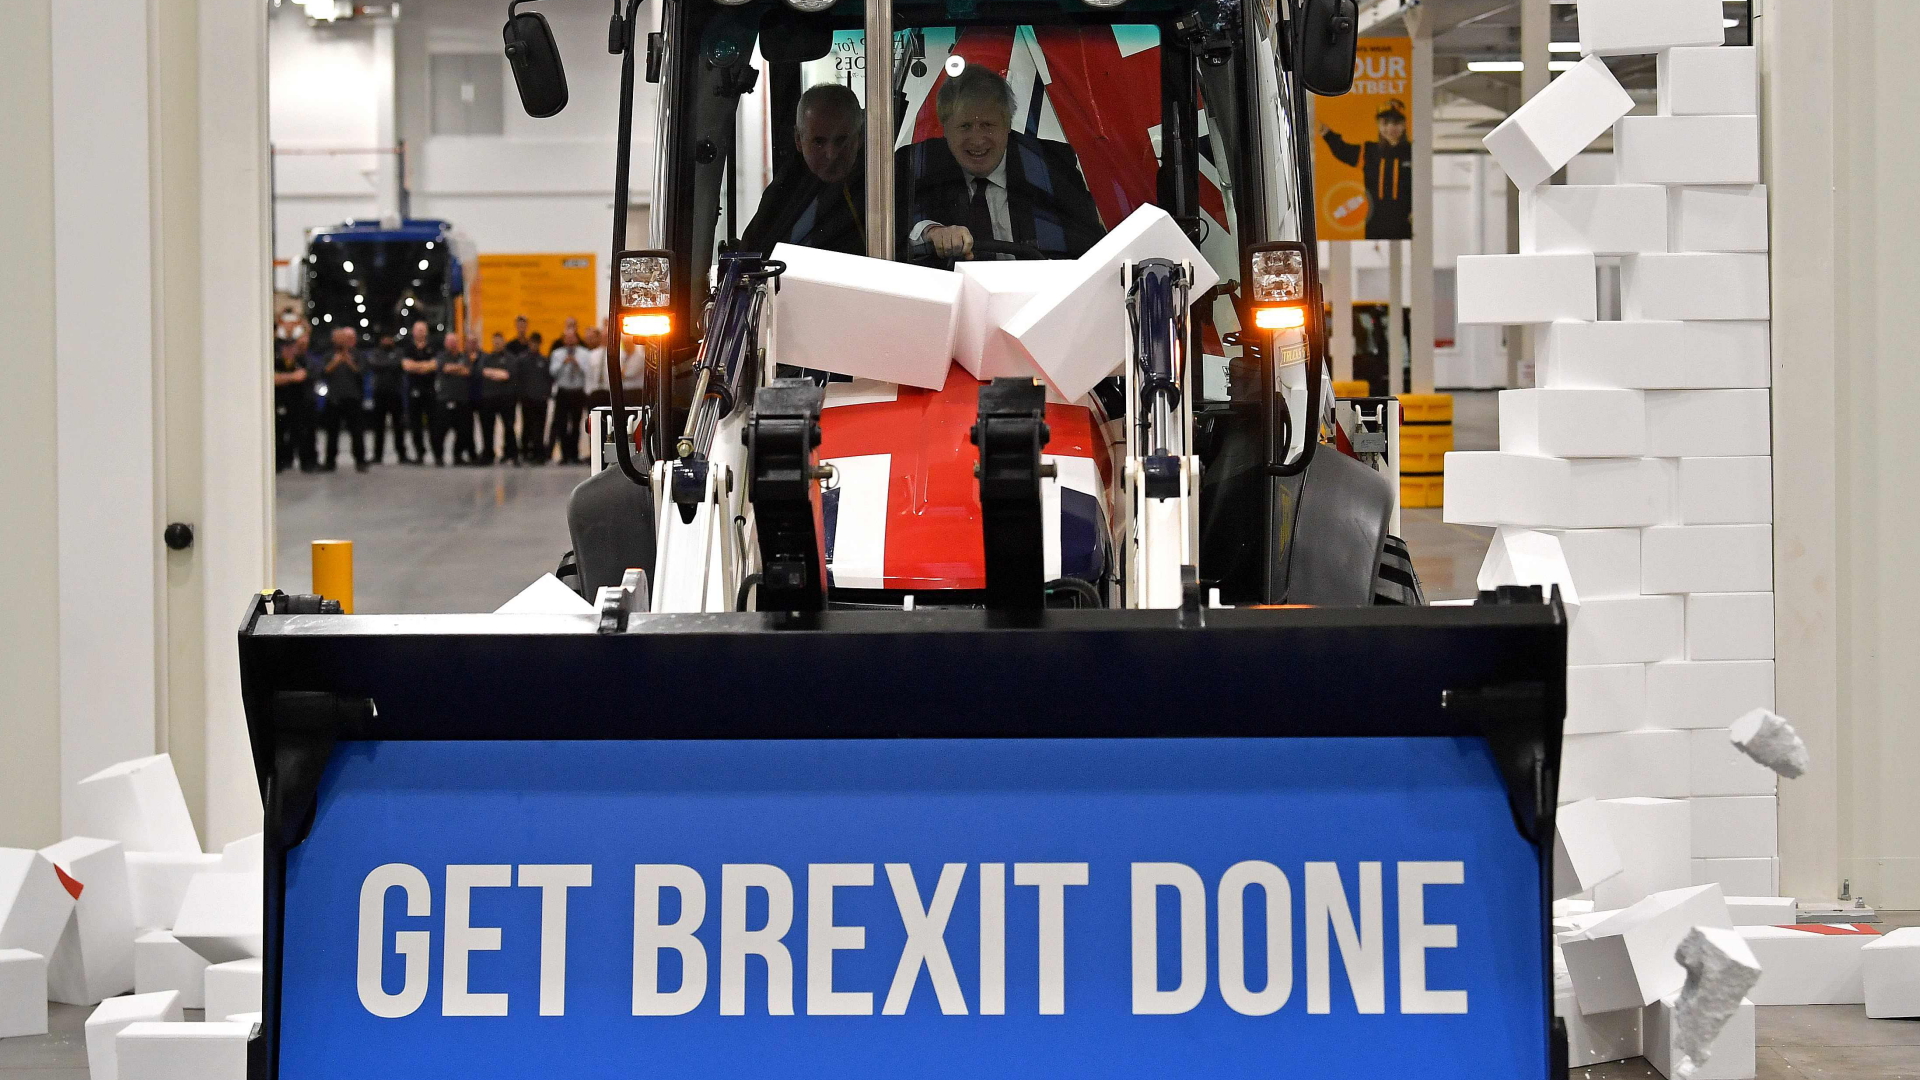 Während des Wahlkampfs im Dezember 2019 fährt Boris Johnson mit einem Bagger mit der Aufschrift "Get Brexit done" symbolisch durch eine Styropor-Mauer